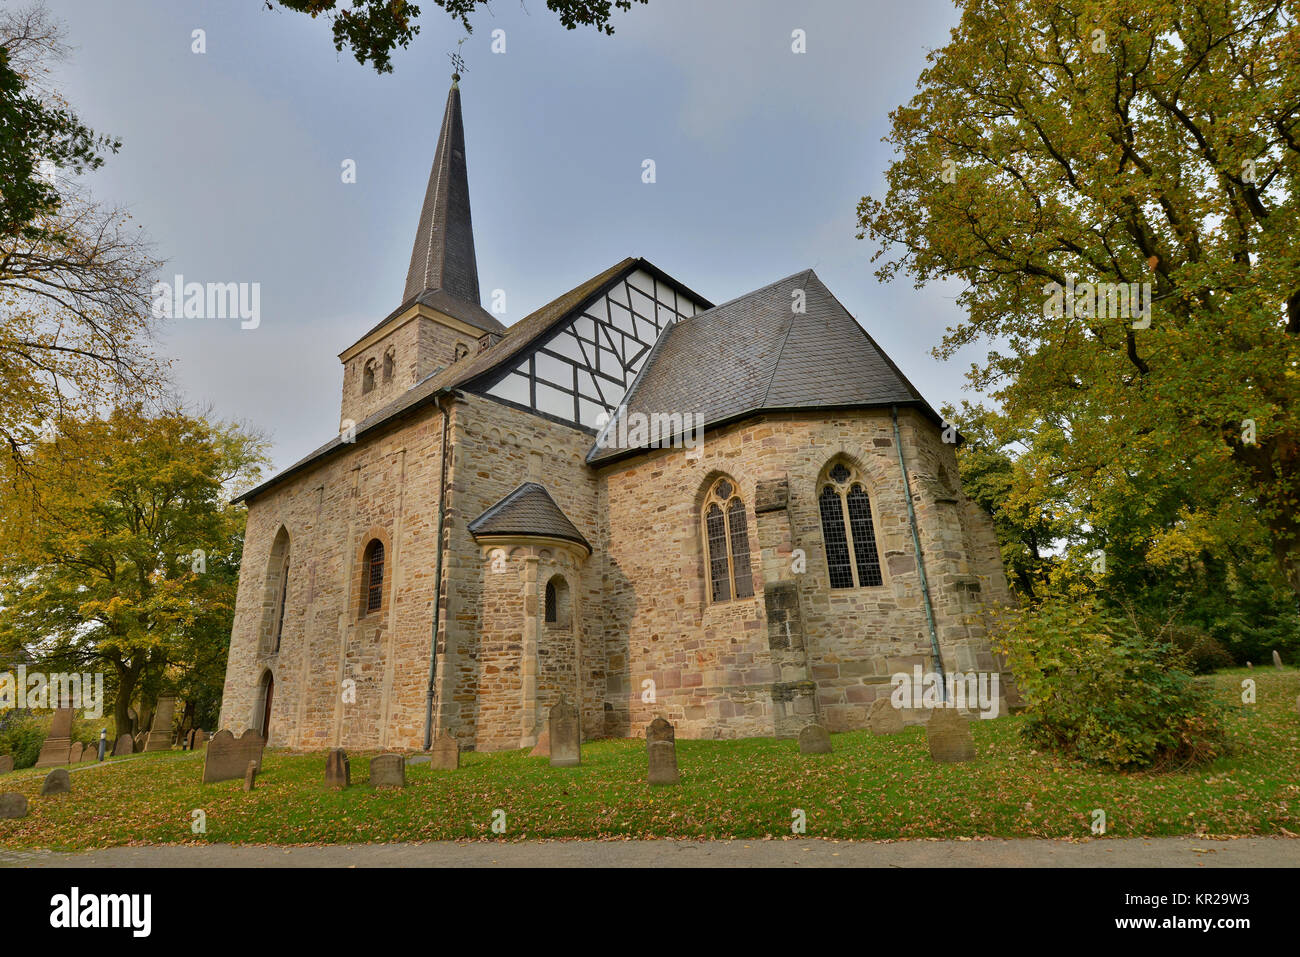 Dorfkirche Stiepel, Brockhauser Straße, Stiepel, Bochum, Nordrhein-Westfalen, Deutschland, Dorfkirche, stiepel Brockhauser Straße, Nordrhein-Westf Stockfoto